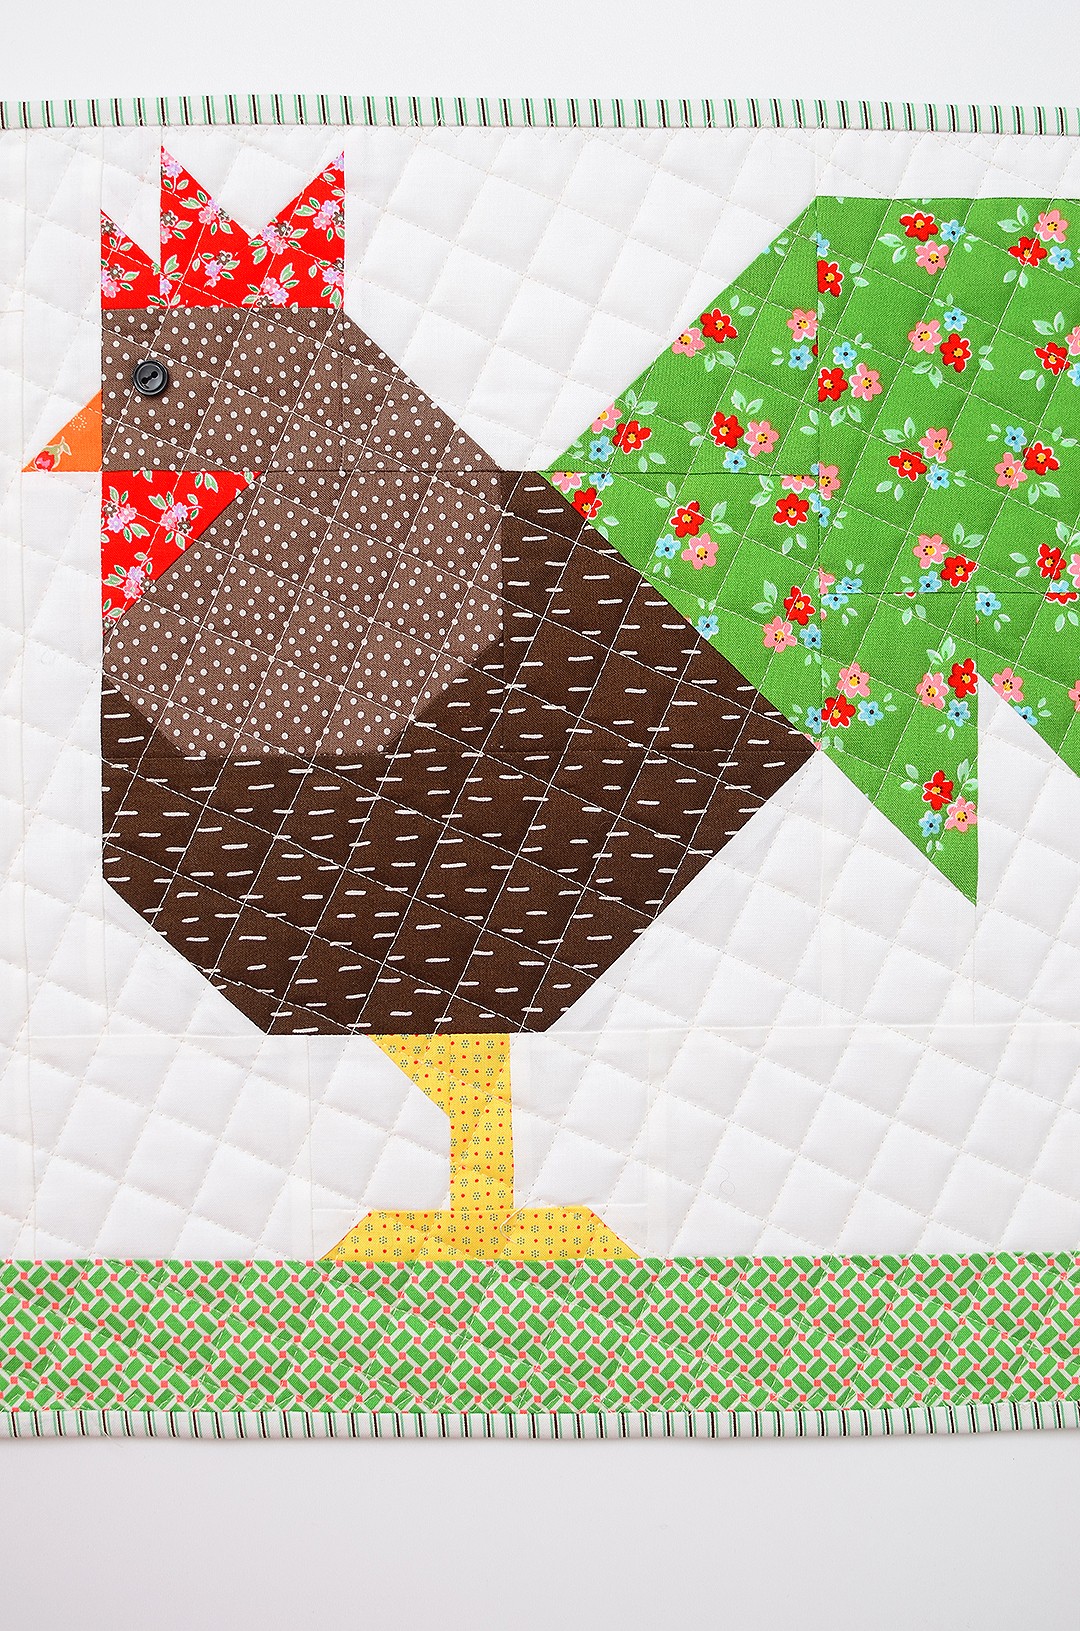 Chicken Family Table Runner - Easter Quilt Pattern